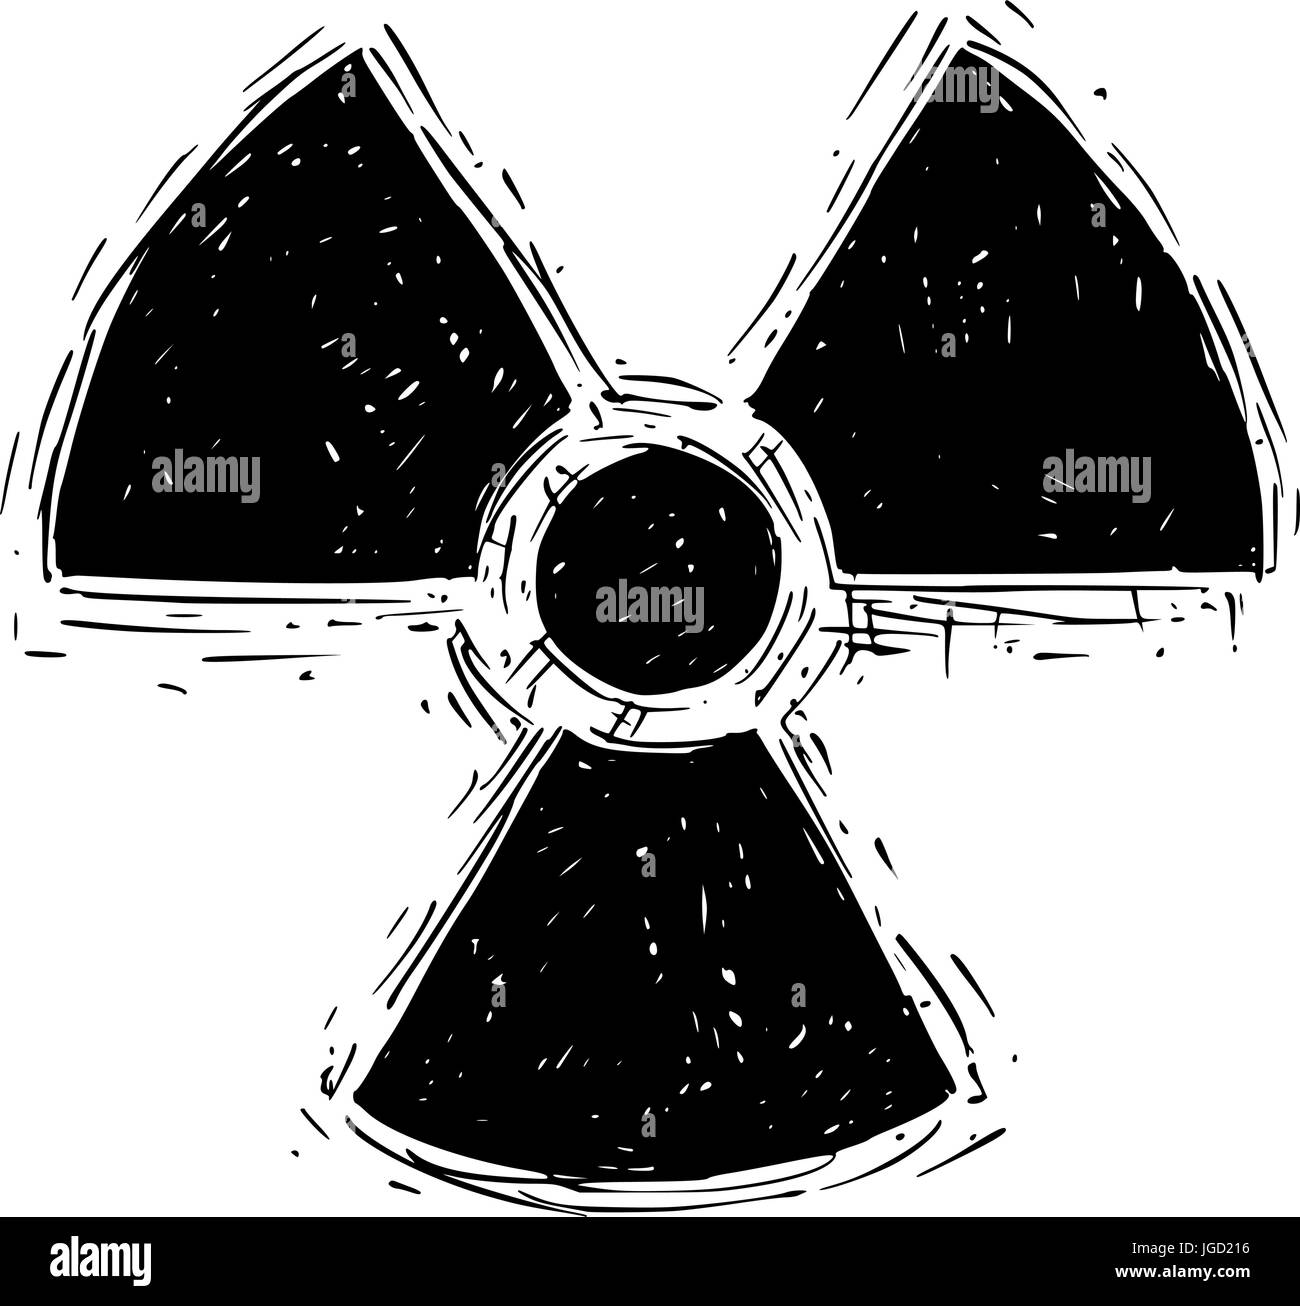 Vektor Doodle Handzeichnung Symbol für radioaktive Strahlung. Stock Vektor